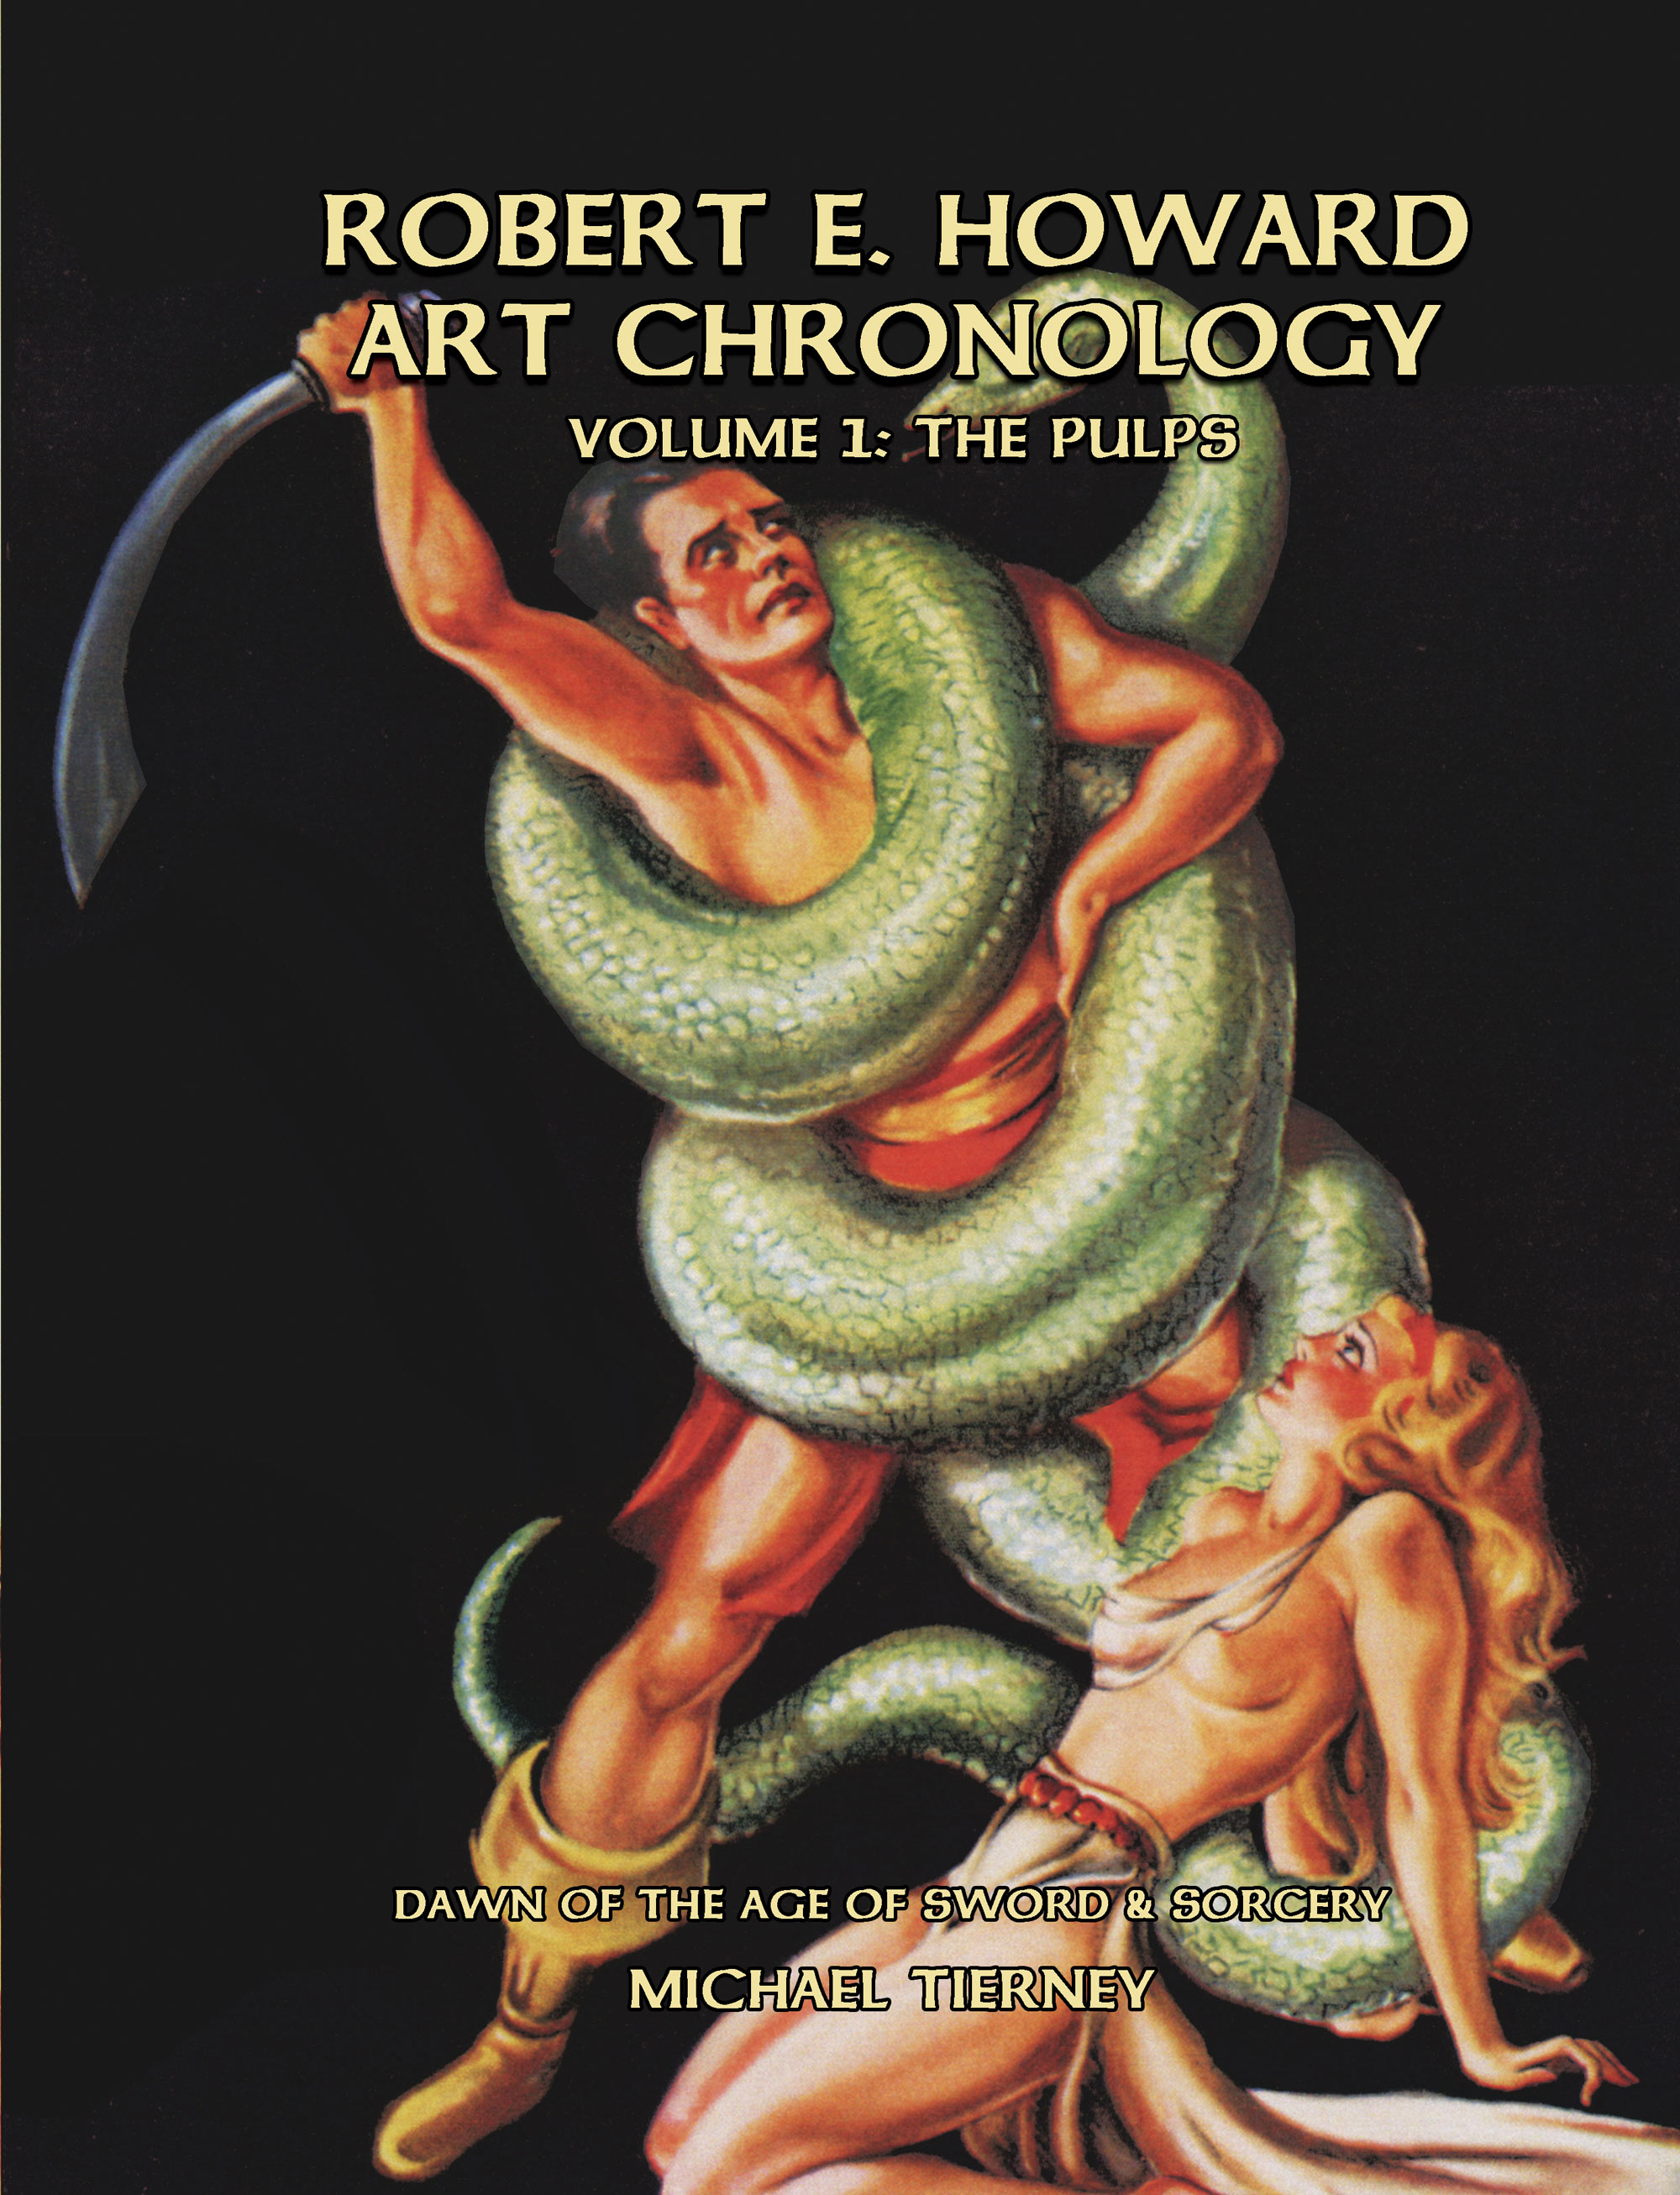 Robert E. Howard Art Chronology